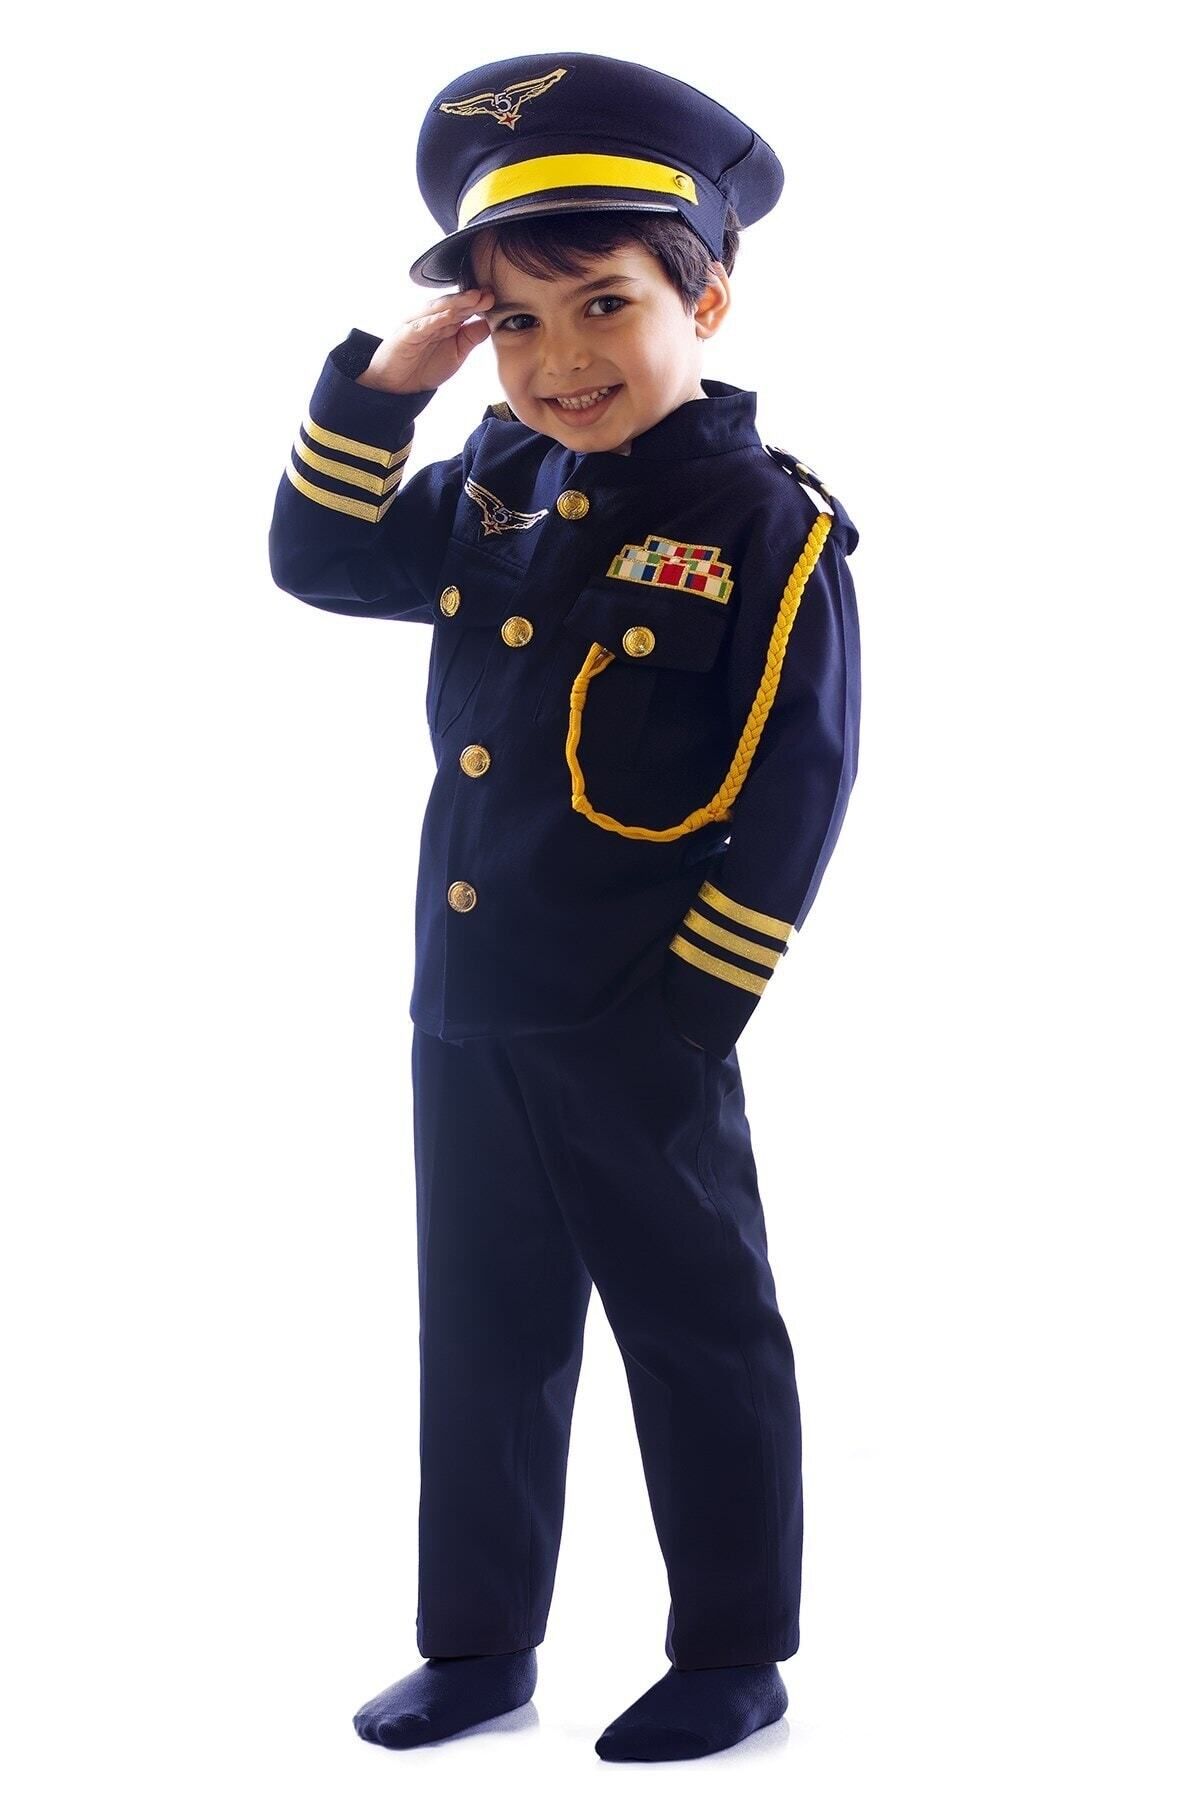 OULABİMİR Pilot Kostümü Çocuk Kıyafeti